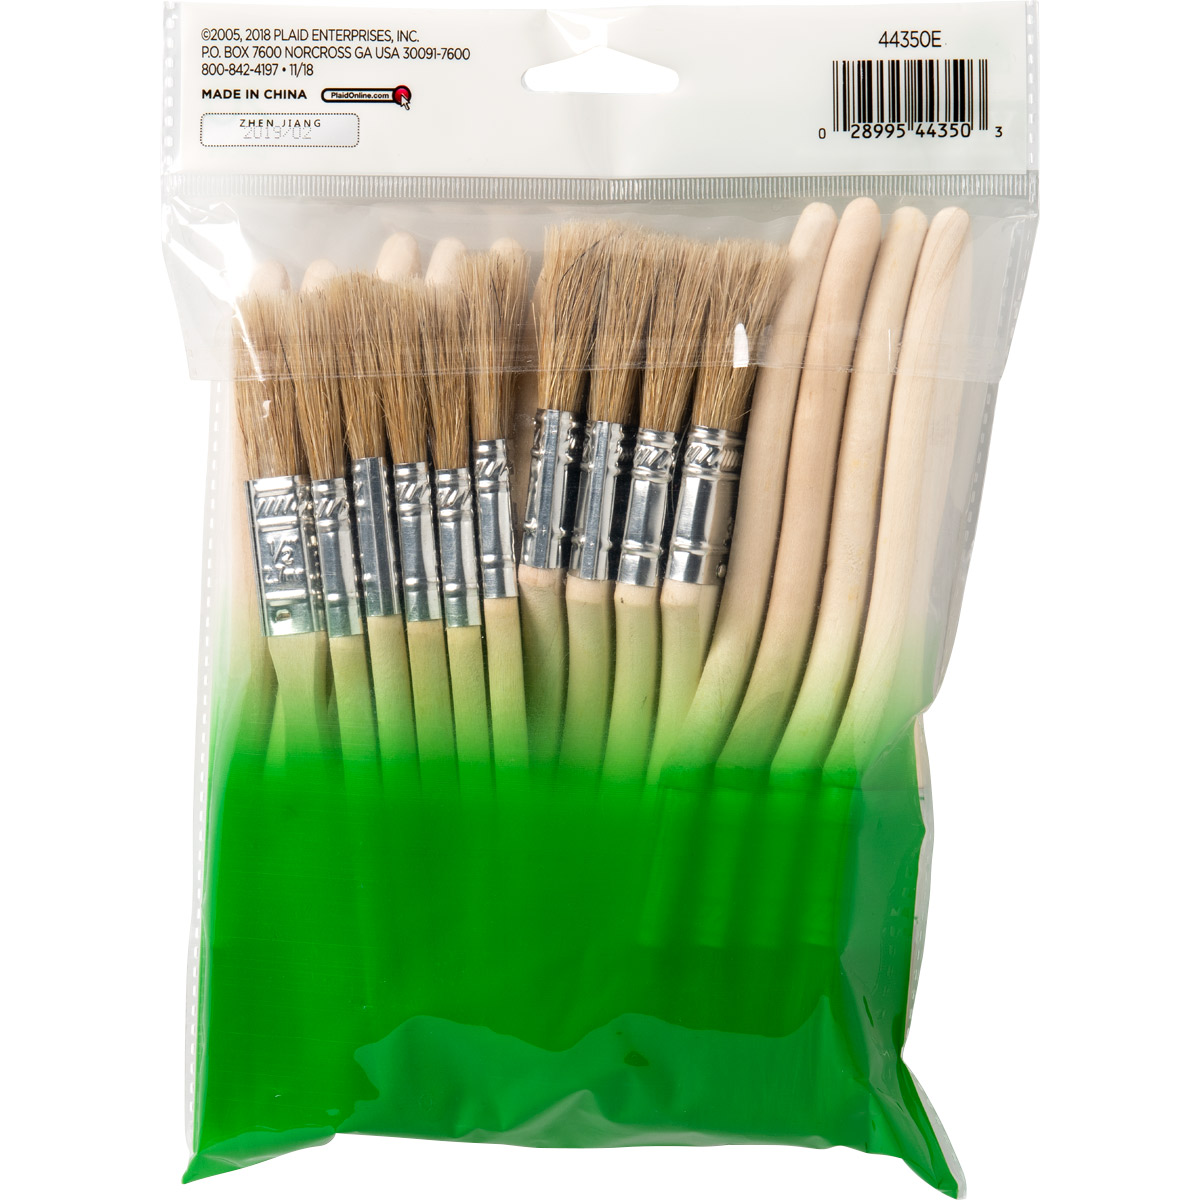 Apple Barrel ® Brush Sets - Chip Brush Value Set, 20 pc. - 44350E